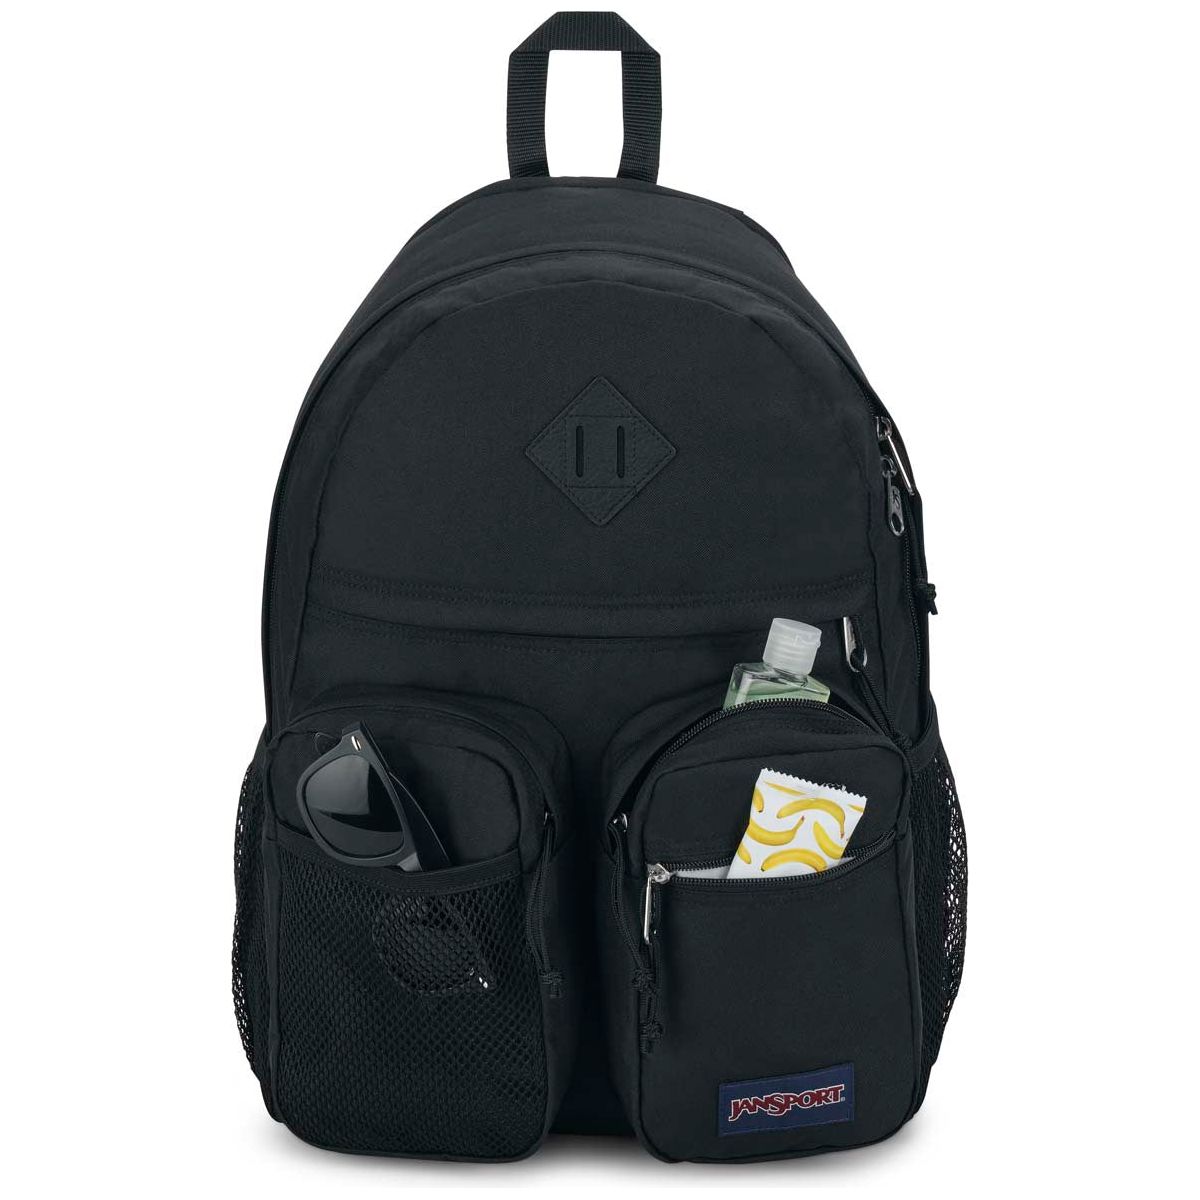 Jansport Granby Laptop Backpack - Black